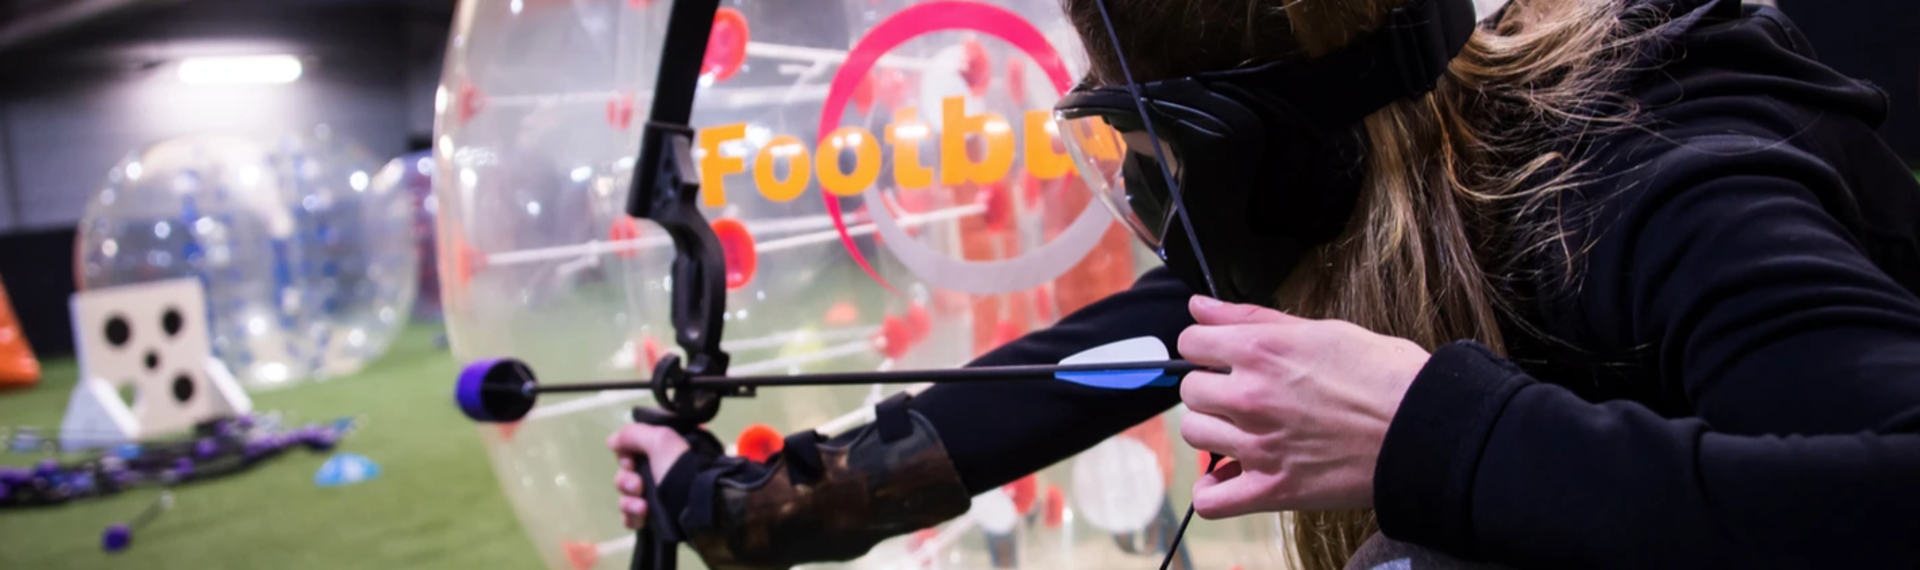 Bubble Foot et Archery Tag à Berlin. Un combo EVG parfait